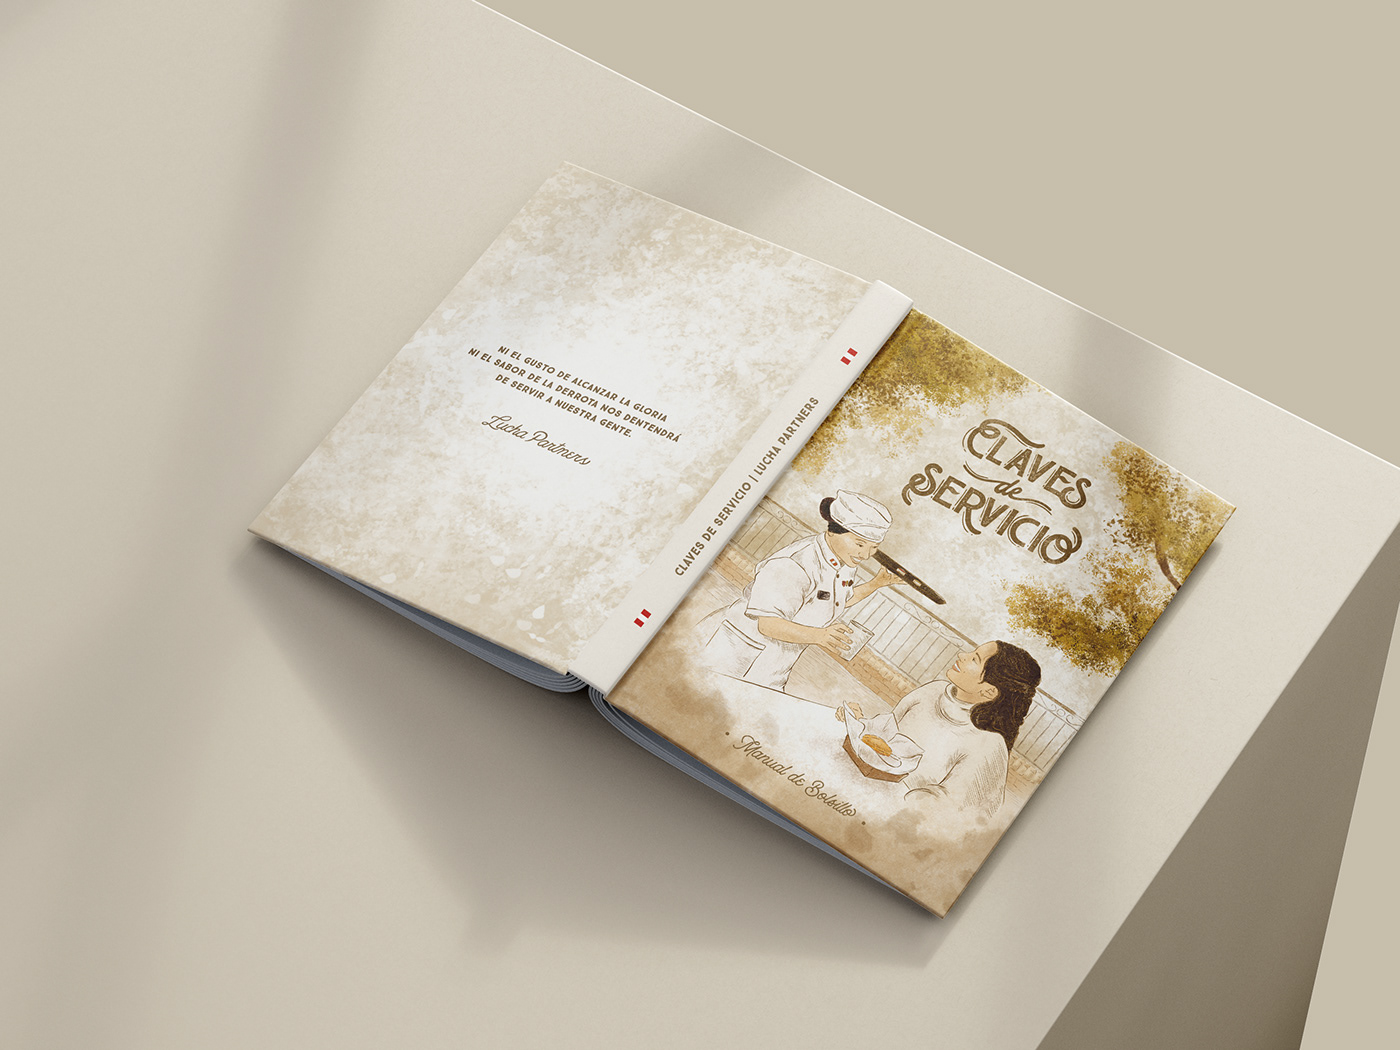 Diseño editorial ilustracion book cover Bookdesign Photography  editorial typography   editorial design  Editorial Illustration diagramación